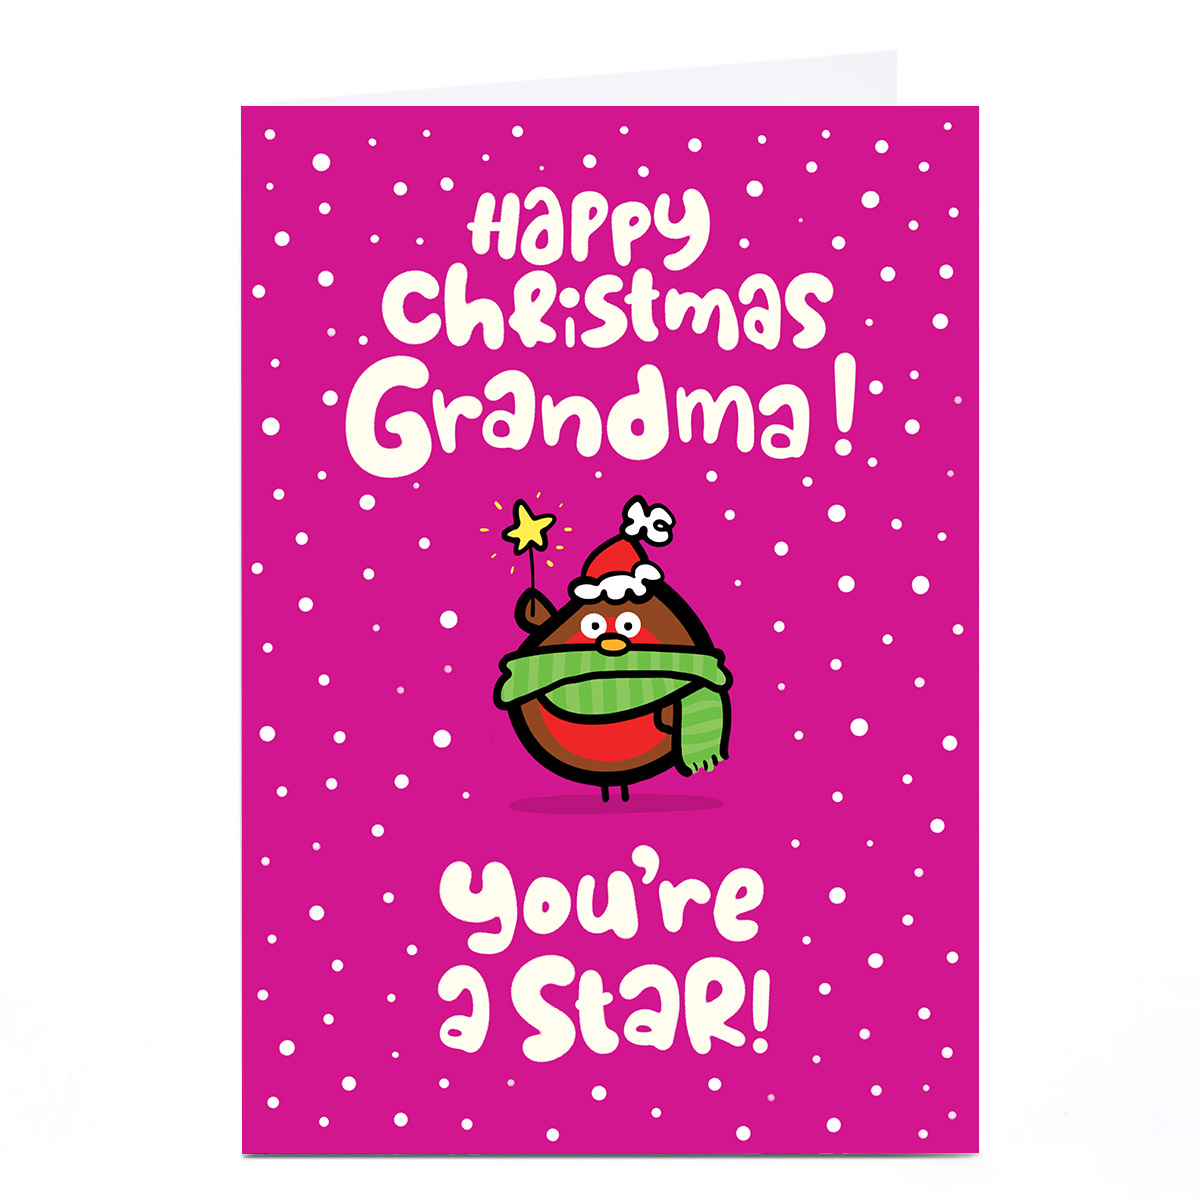 Personalised Fruitloops Christmas Card - Grandma Star